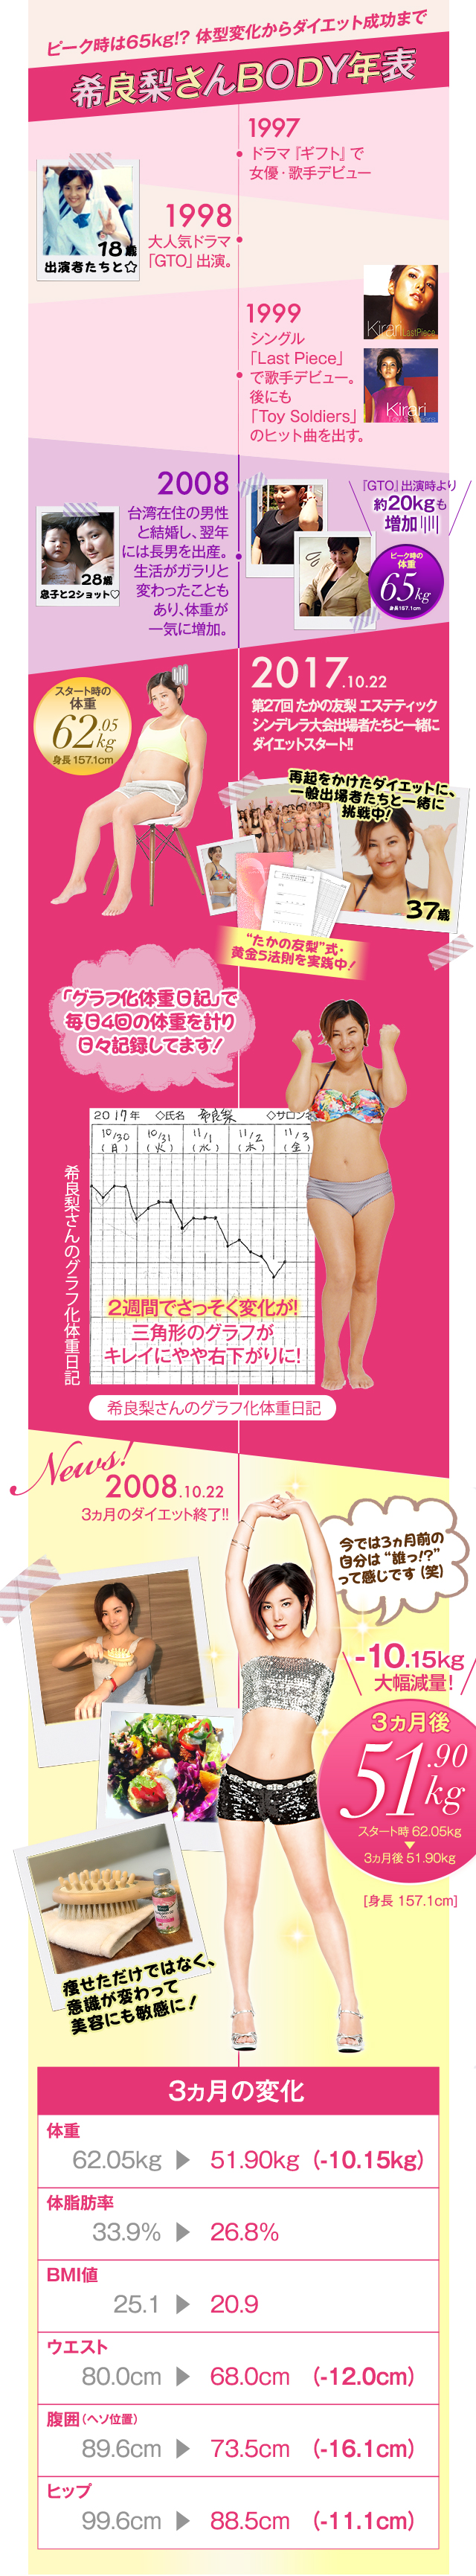 ドラマ Gto に出演していた元アイドル女優 希良梨さん 37 が 3ヵ月間の本気ダイエットで 10 15kg エステといえば たかの友梨